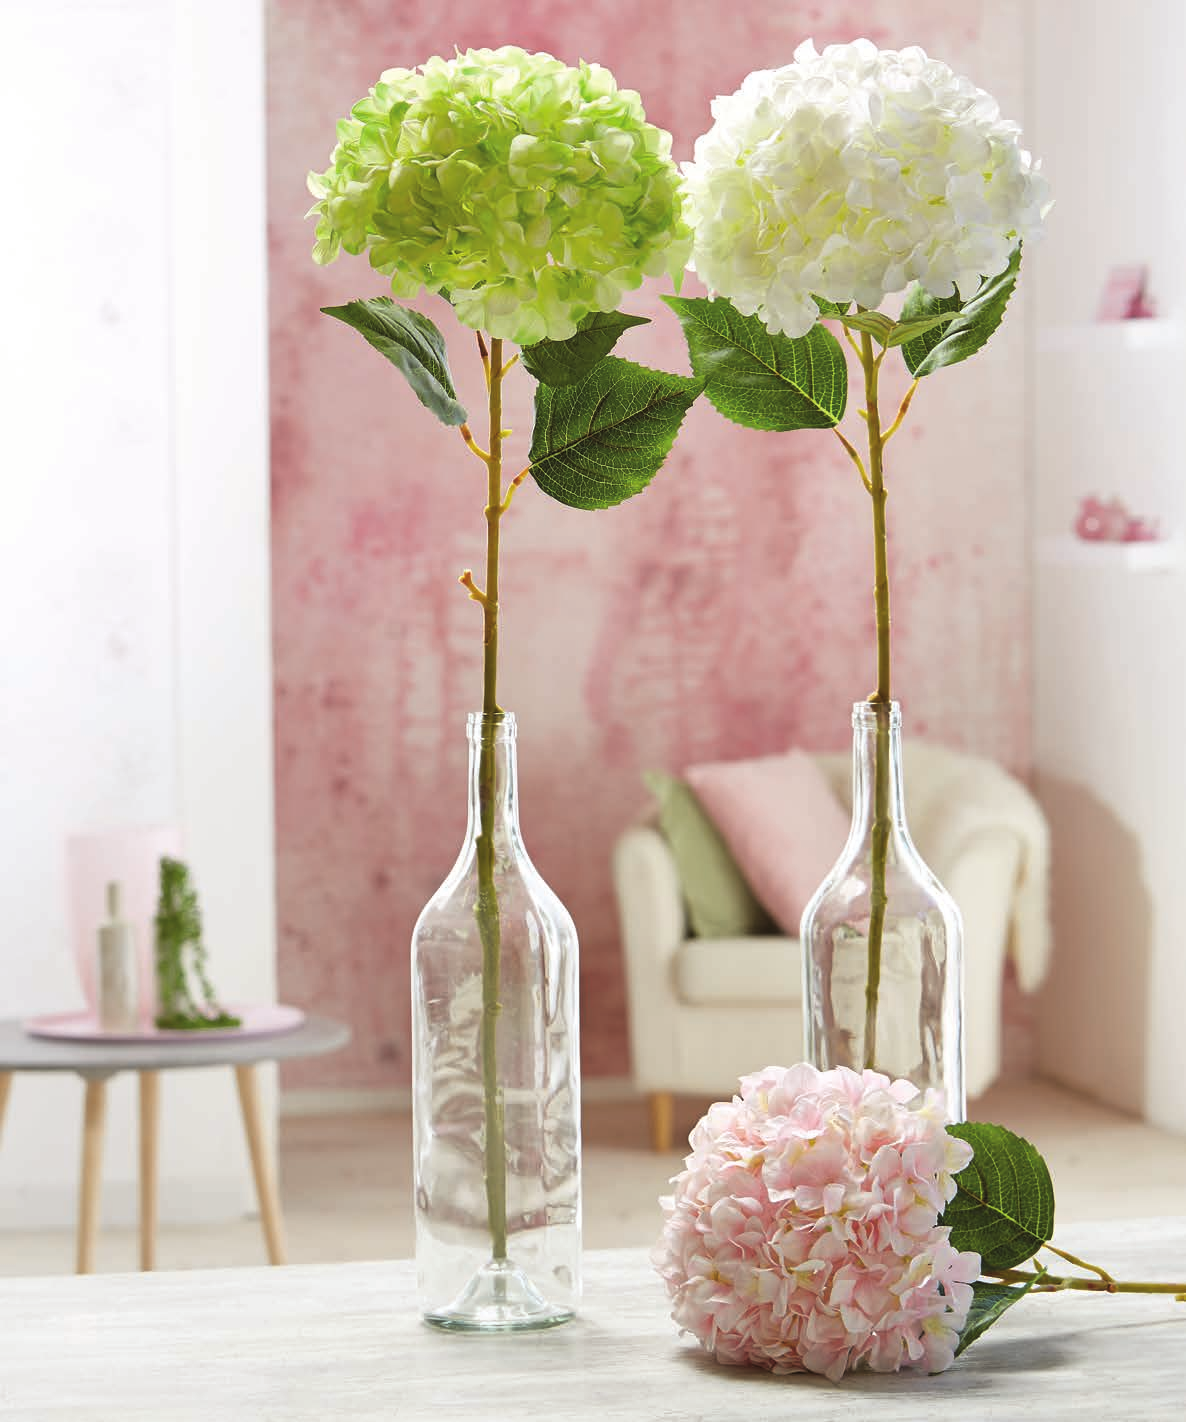 12, 99 XXL-Hortensienblüte Blüte: weiß, grün oder rosa Länge ca.